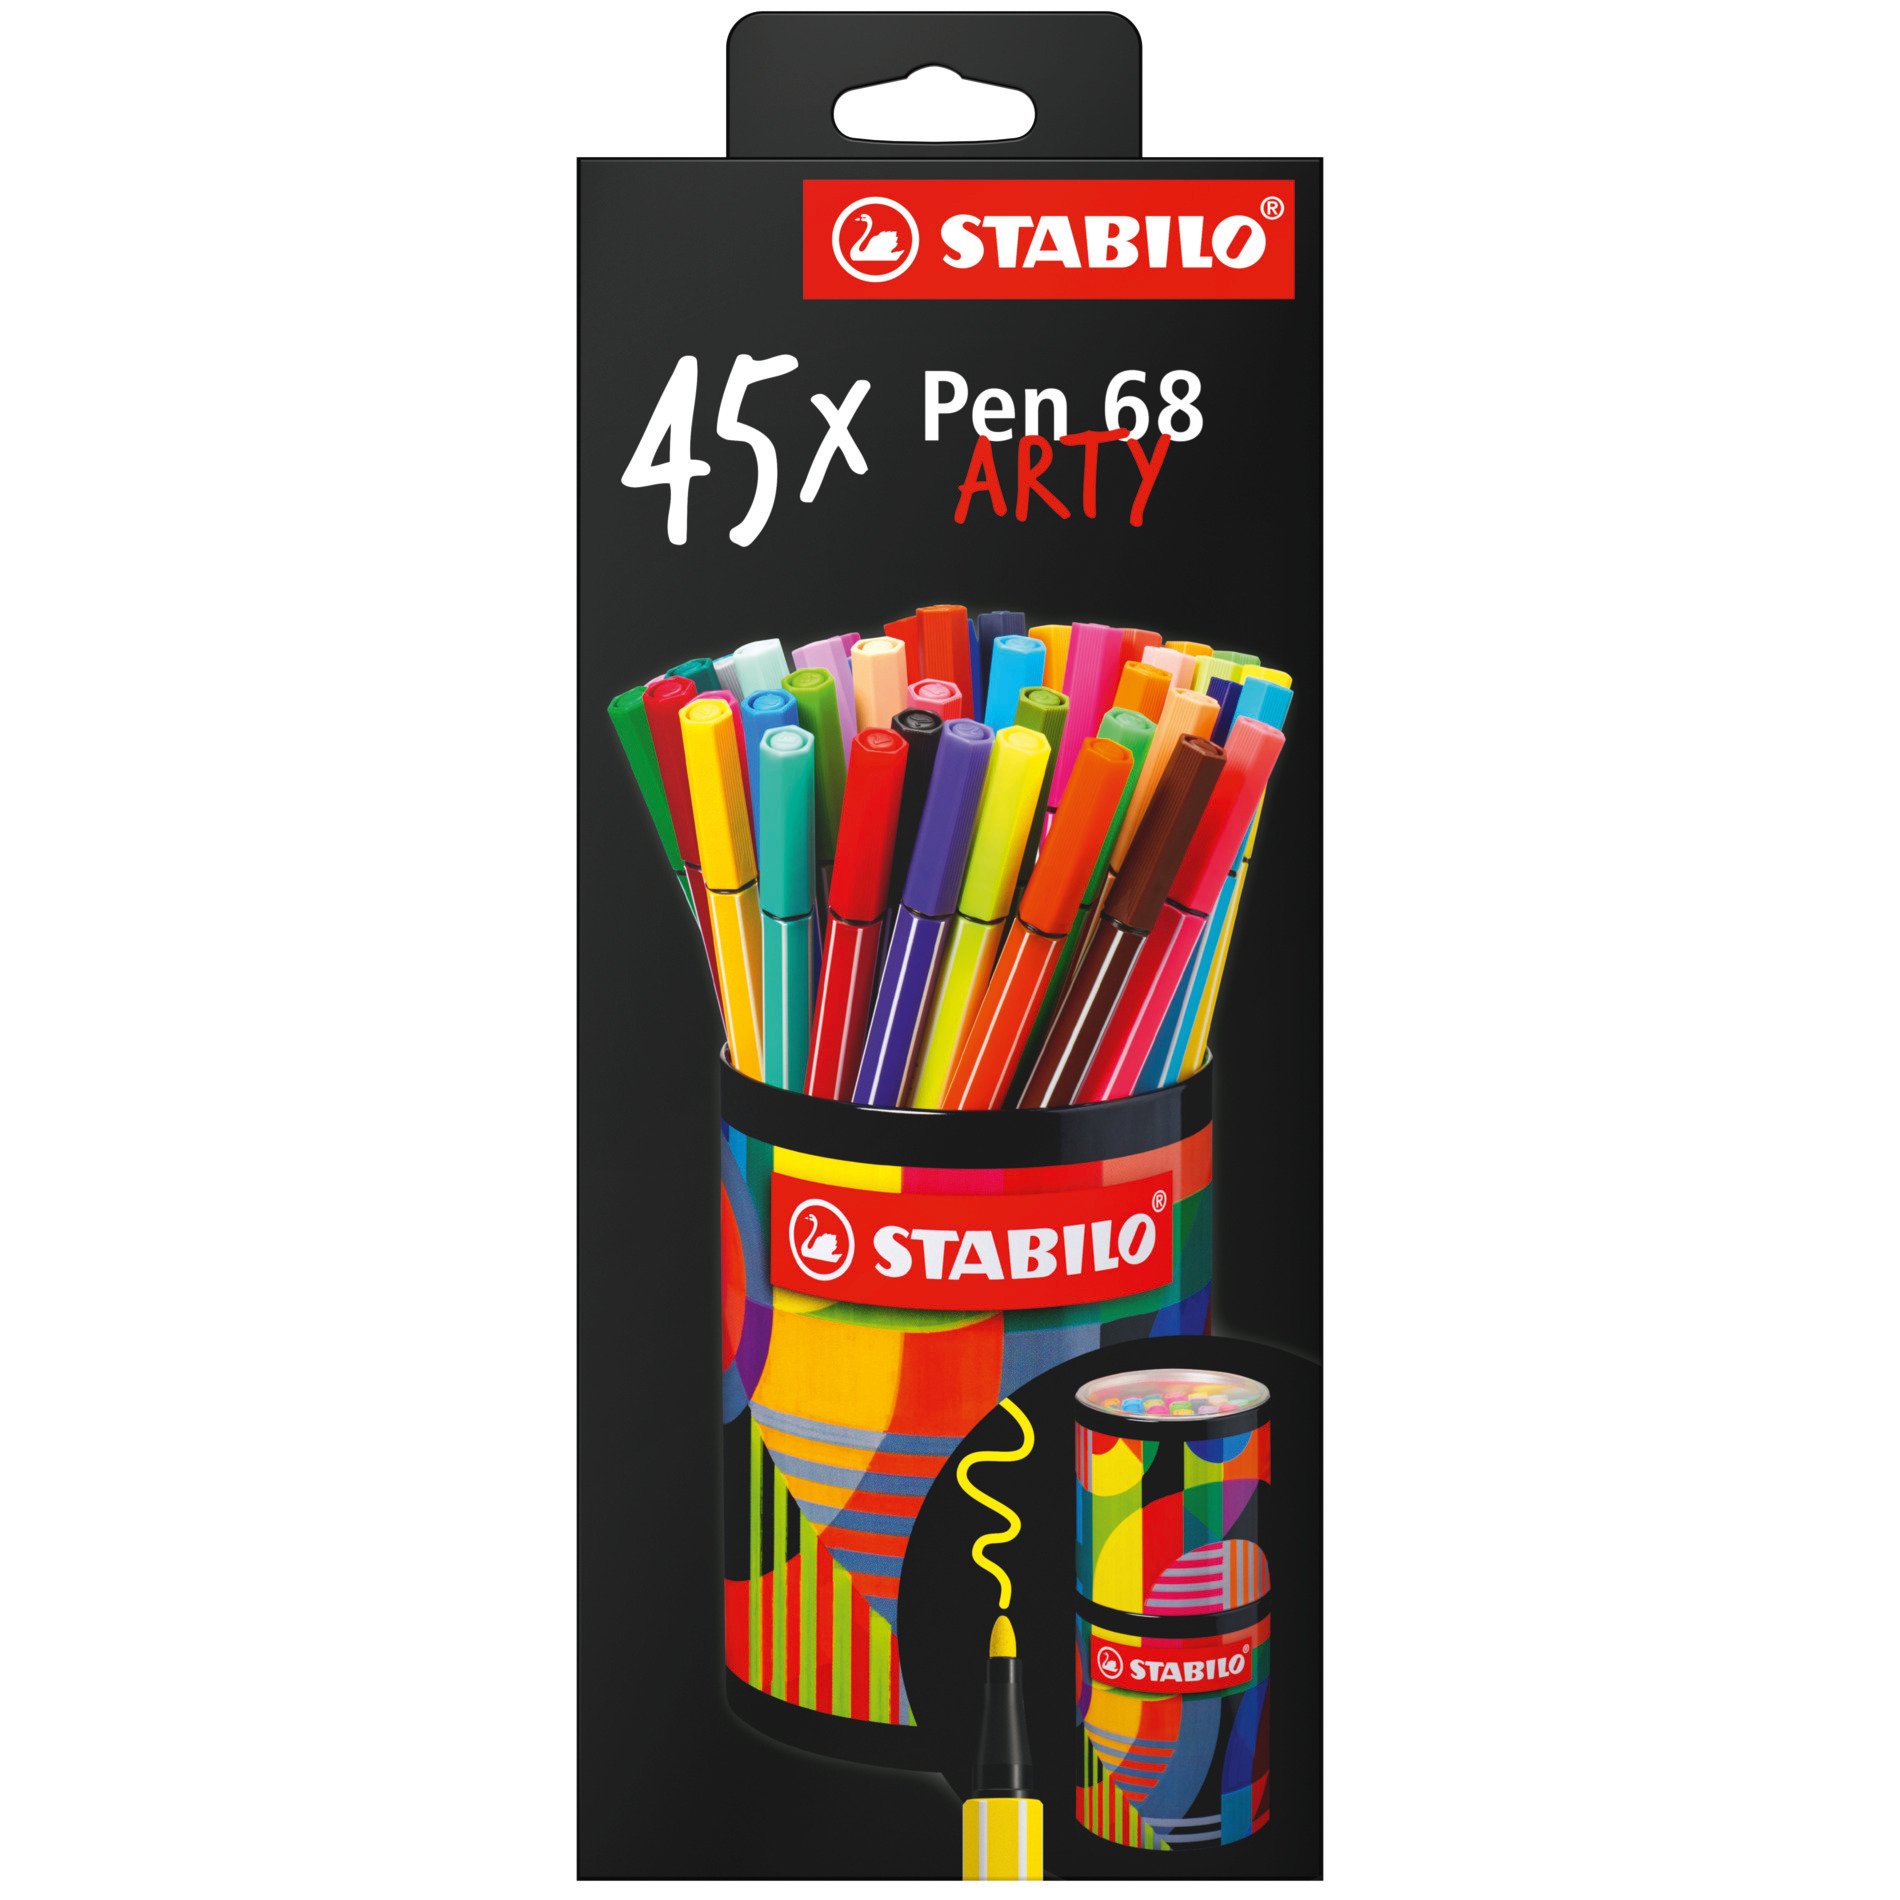 Fasermaler STABILO Pen 68 ARTY